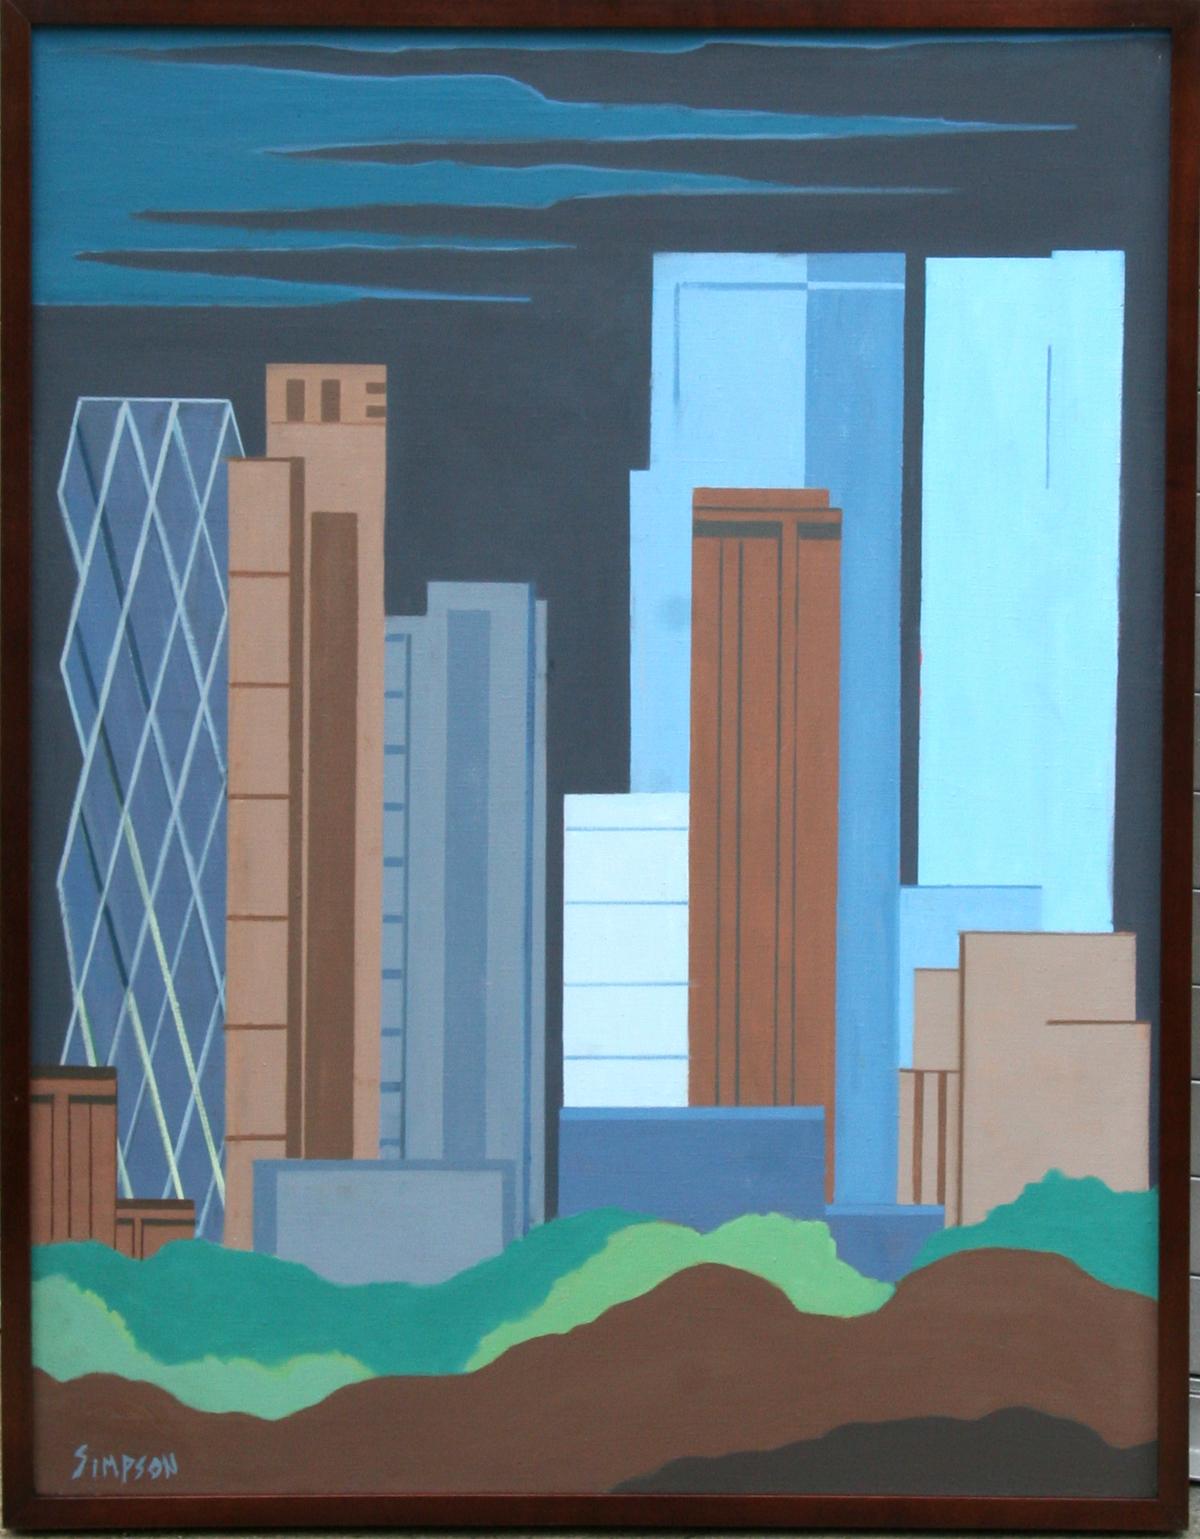 Artiste : Allan Simpson, américain (1935 - )
Titre : Centre-ville de New York 
Année : vers 1996
Moyen : Huile sur toile, signé à gauche. 
Taille : 39 in. x 30 in. (99,06 cm x 76,2 cm)